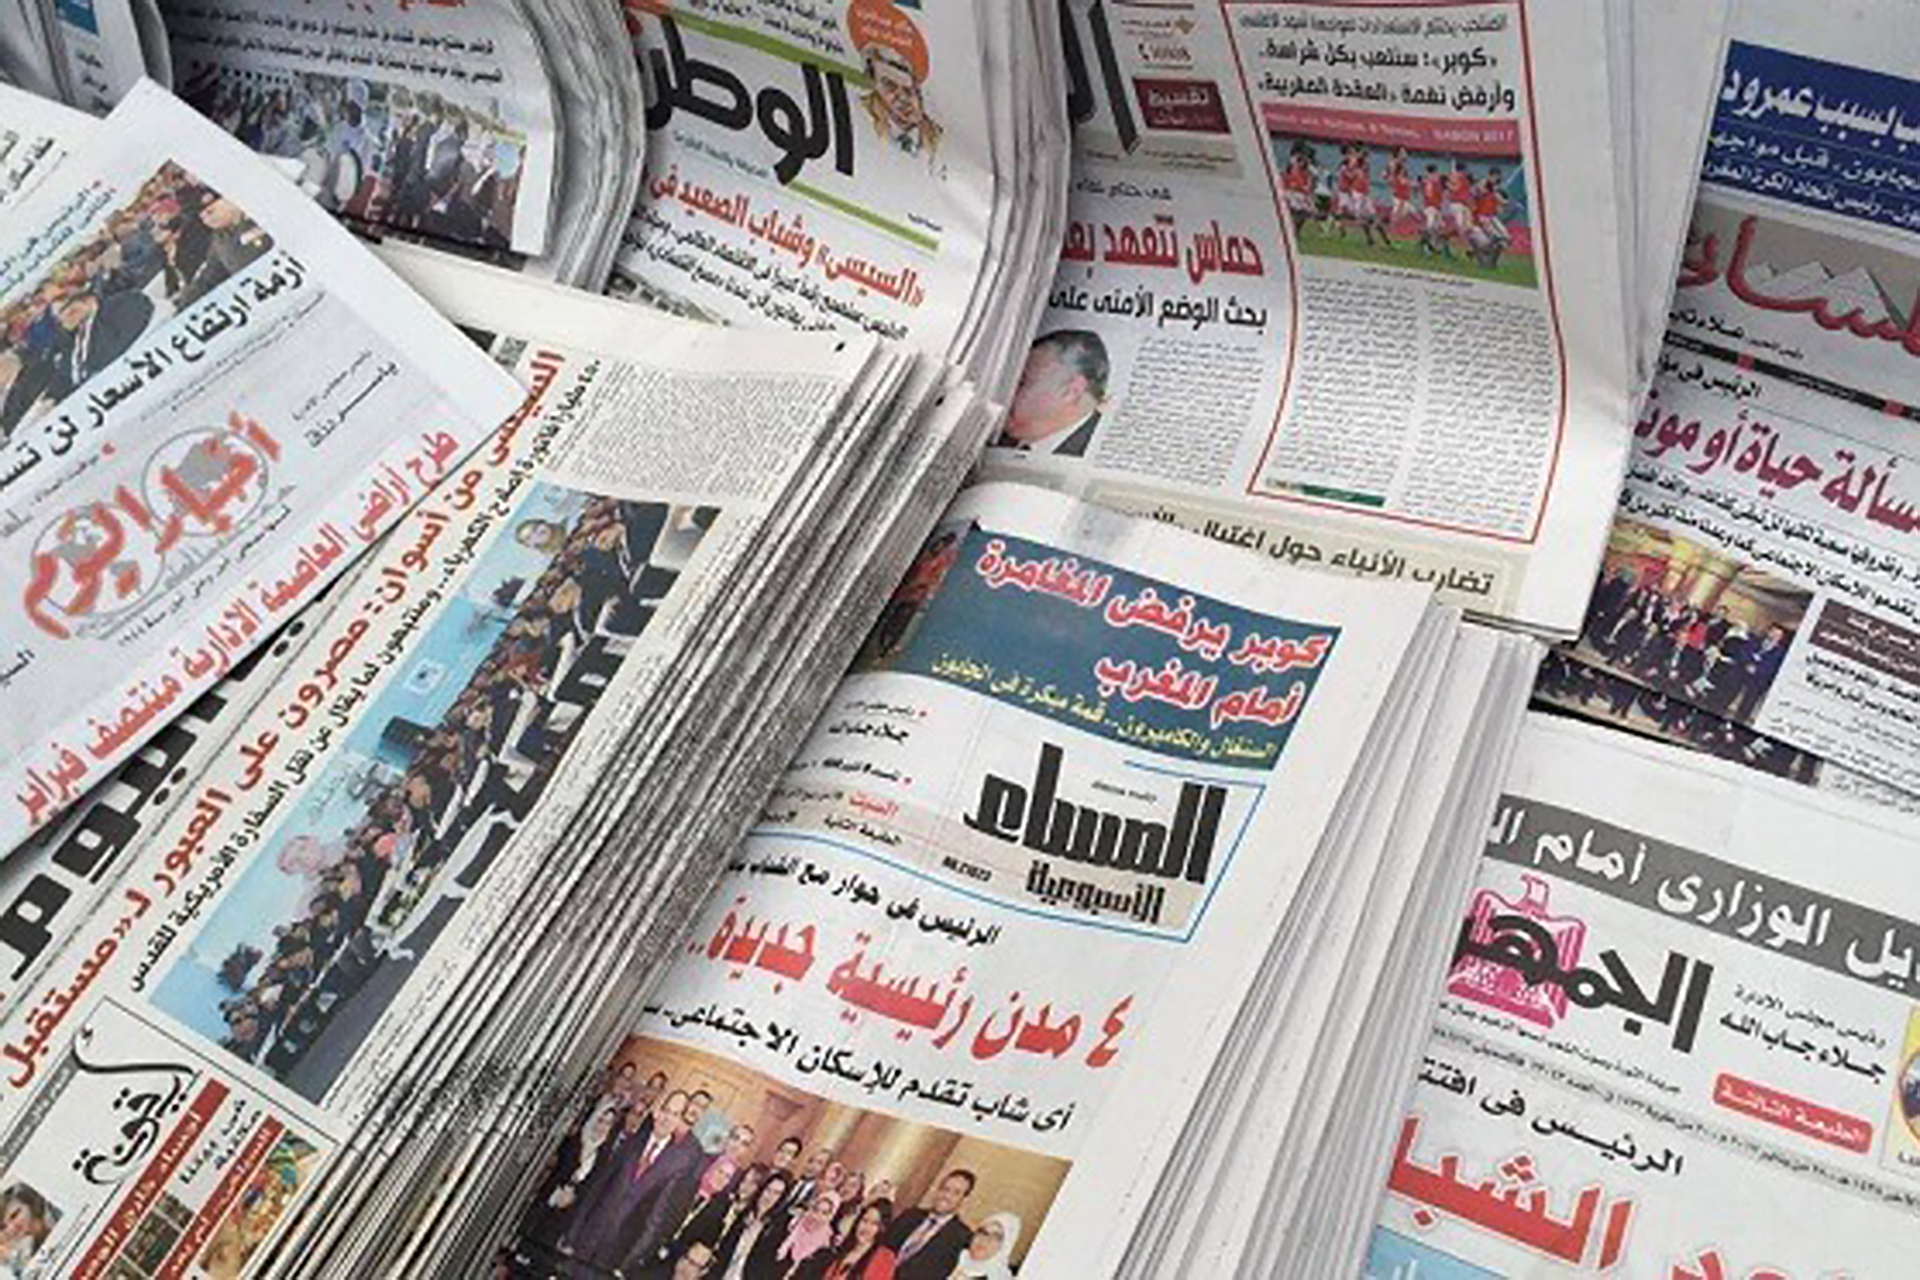 الصحافة الورقية المصرية.. لماذا لم تعُد فاعلة ومؤثرة؟ | سياسة – البوكس نيوز